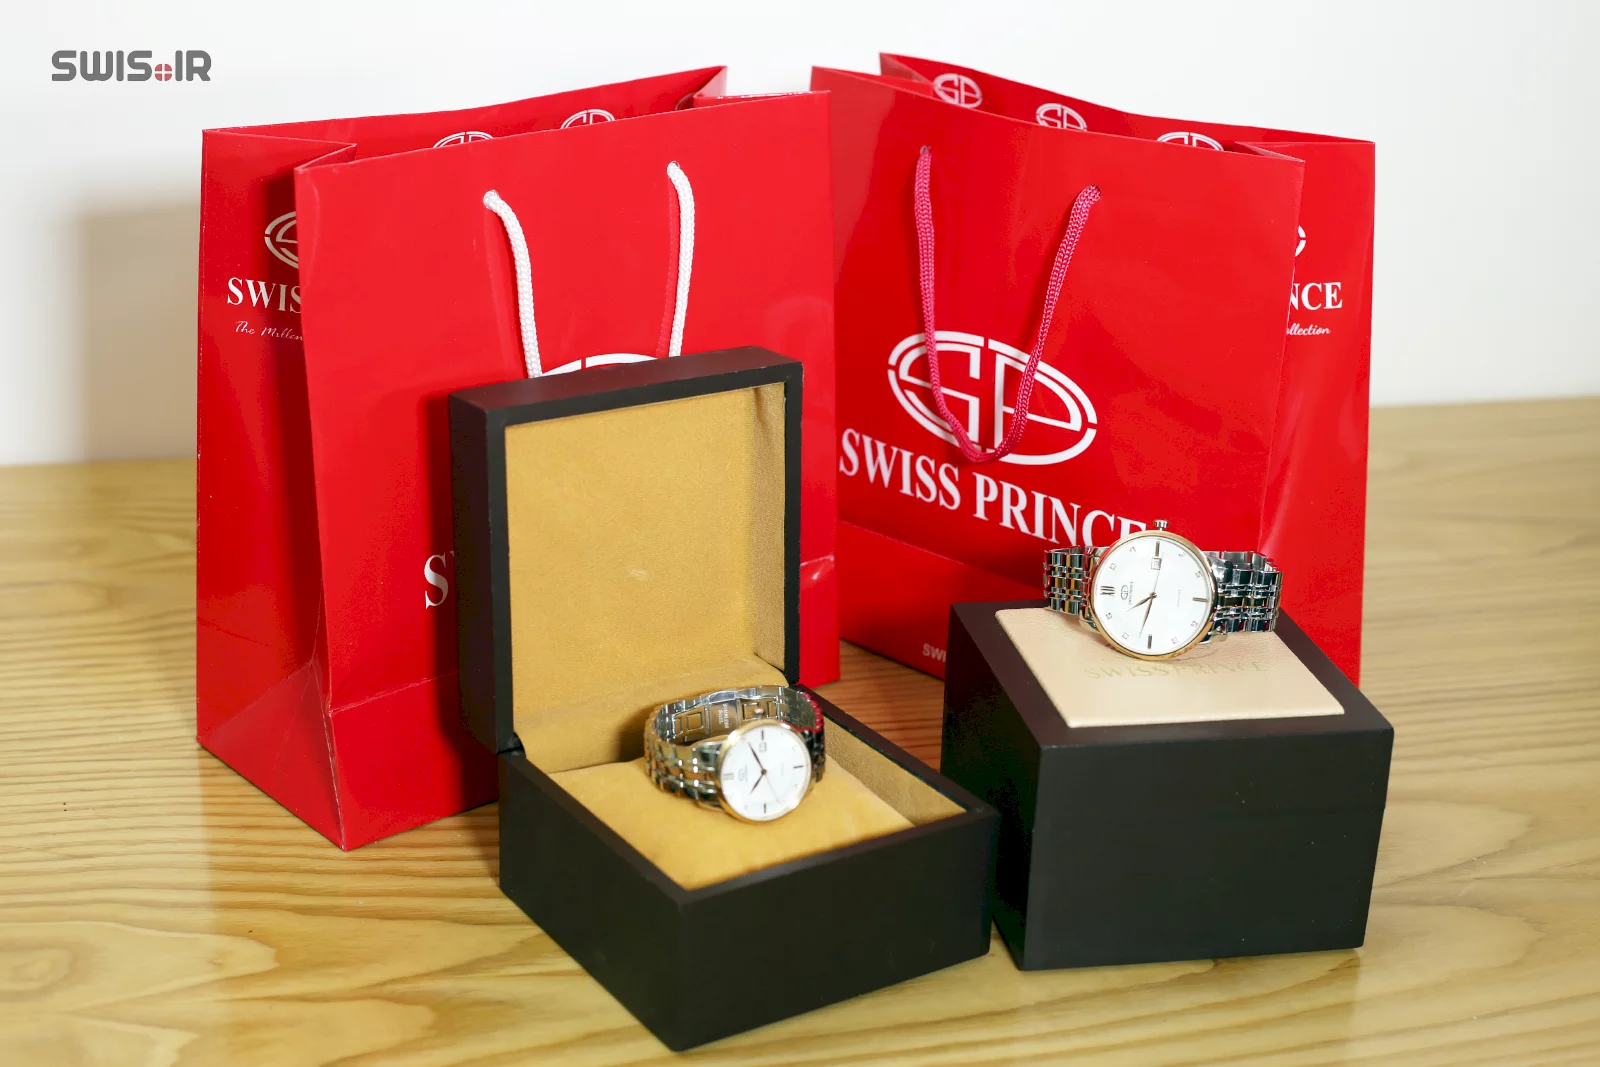 نمونه جعبه ساعت و ساک مخصوص برند سوئیس پرینس